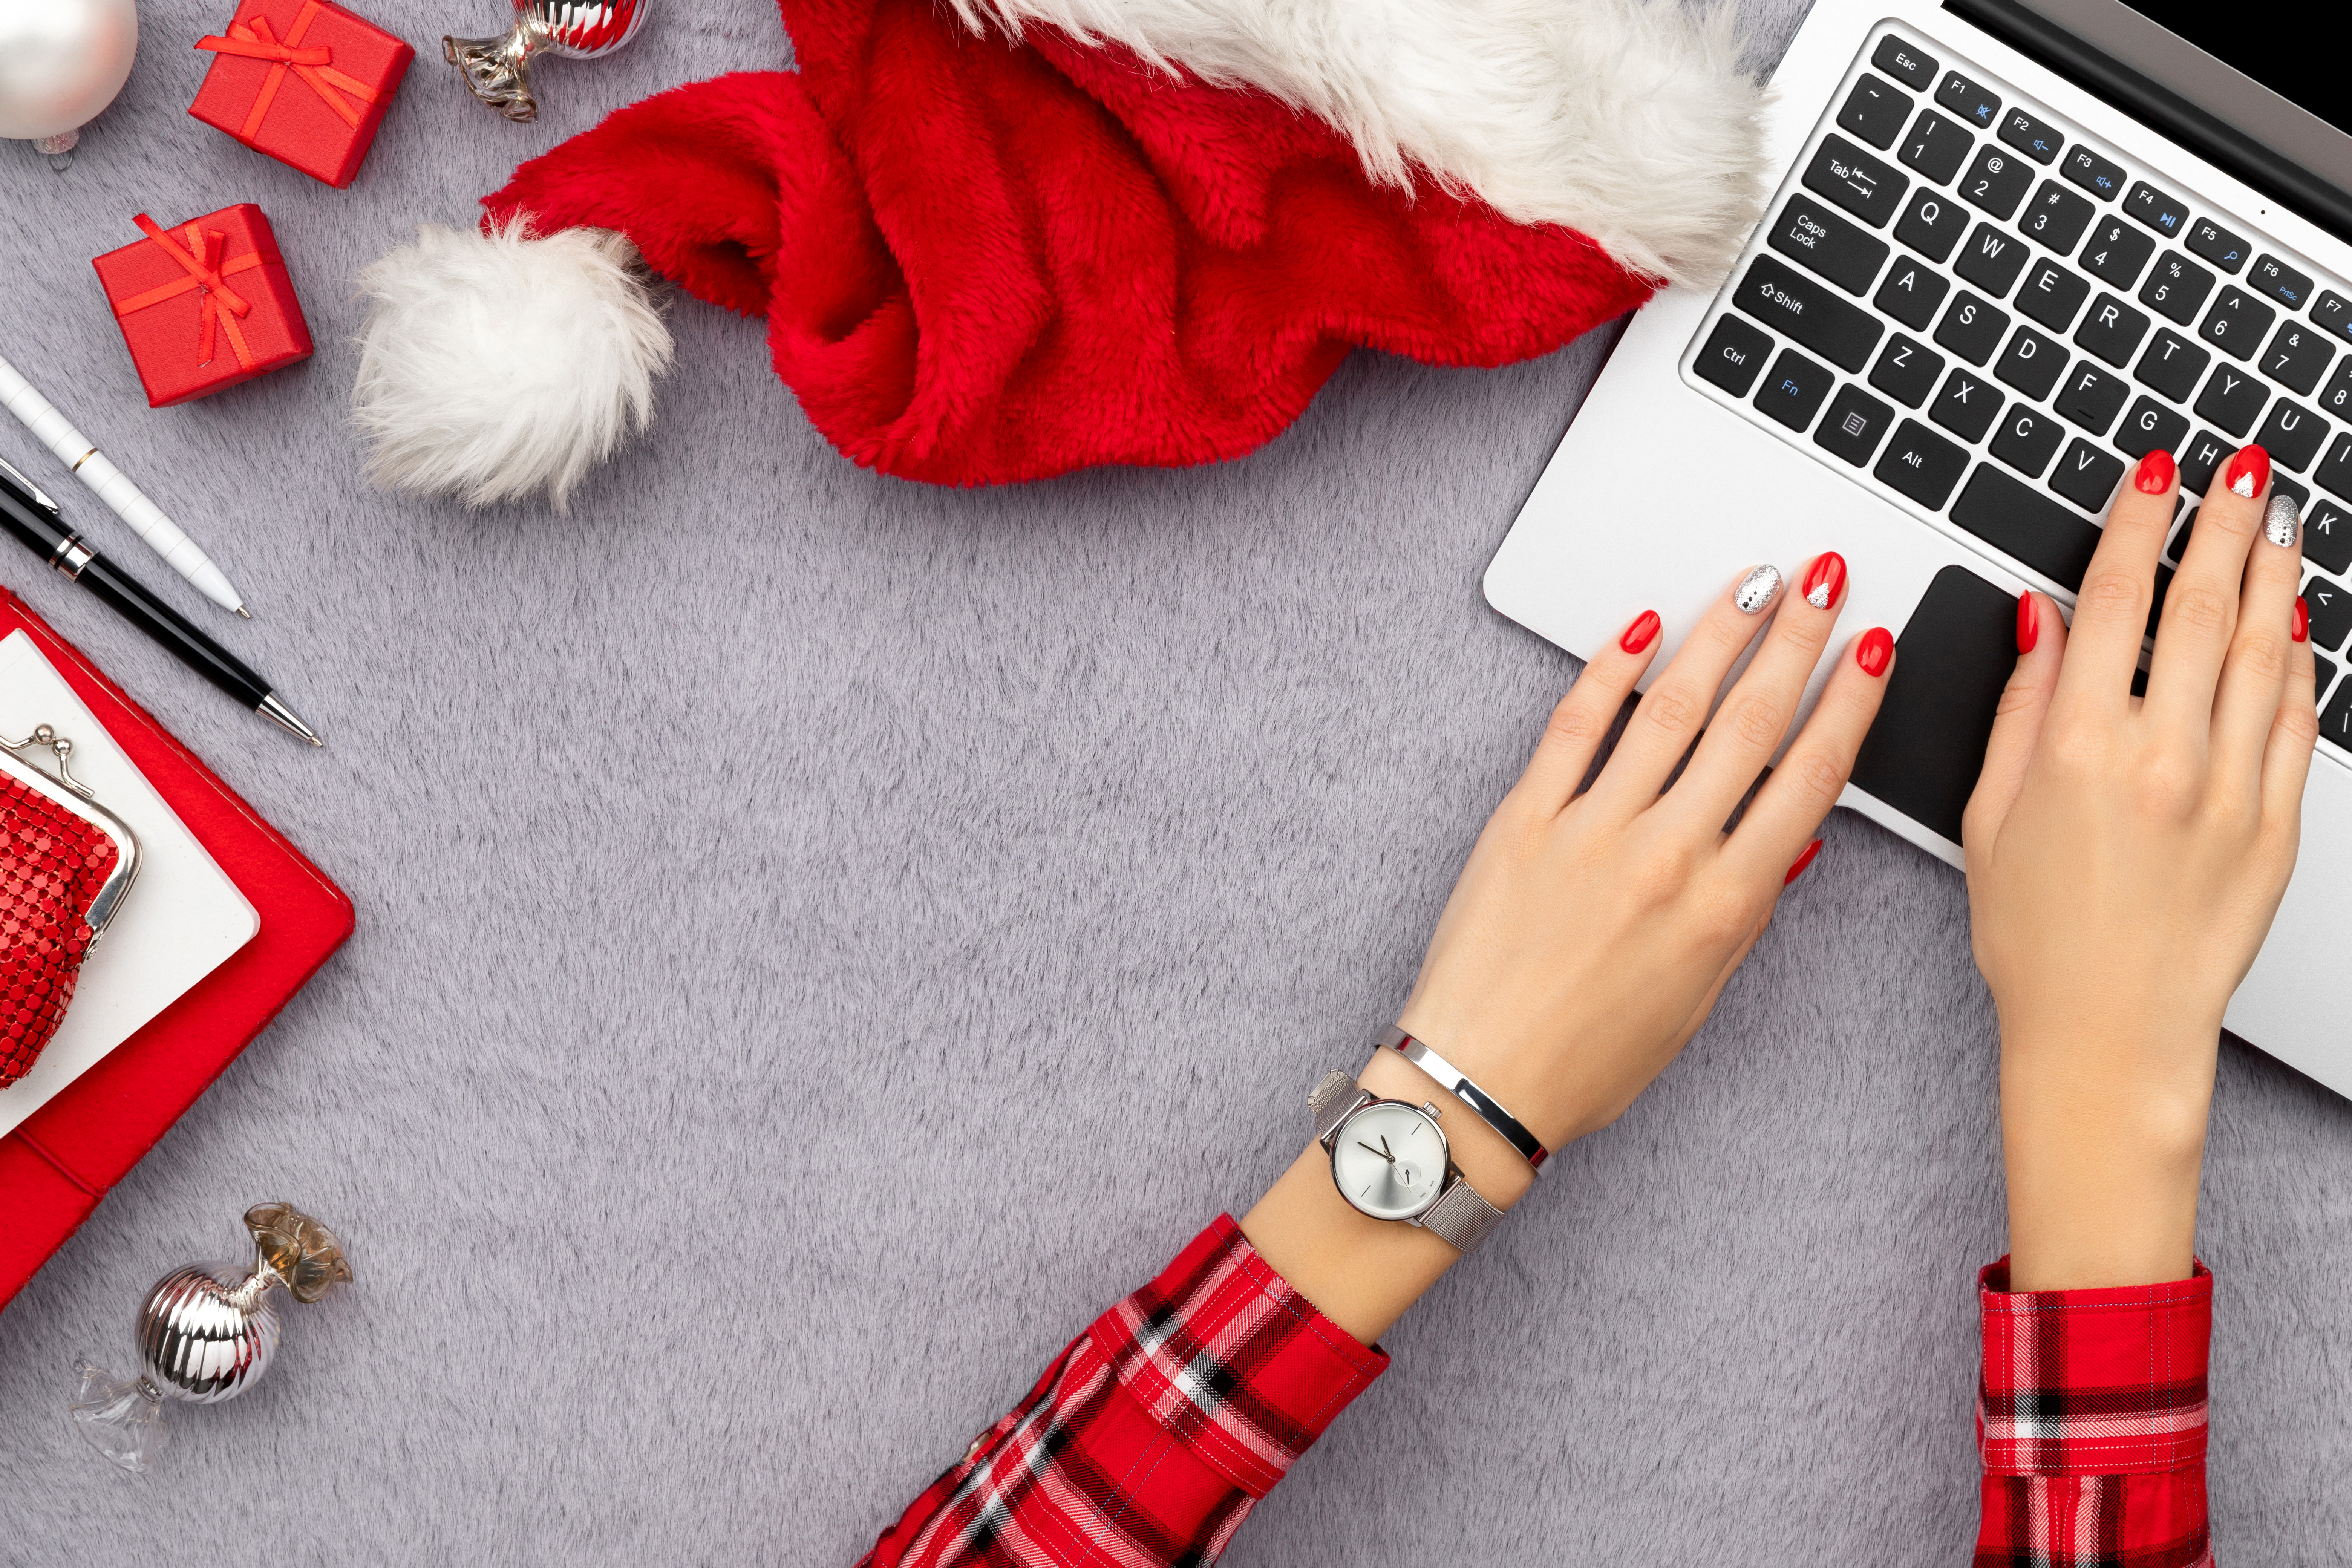 Eine Frau in rot-karierten Oberteil tippt auf einem Laptop. Sie hat rot und silber lackierte Nägel und trägt eine silberne Armbanduhr und ein silbernes Armband. Neben dem Laptop liegen eine rote Weihnachtsmütze, kleine rote Geschenke, silberner Tannenbaumschmuck, ein rotes Notizbuch, ein roter Geldbeutel, weiße Karten und ein schwarzer Kugelschreiber.